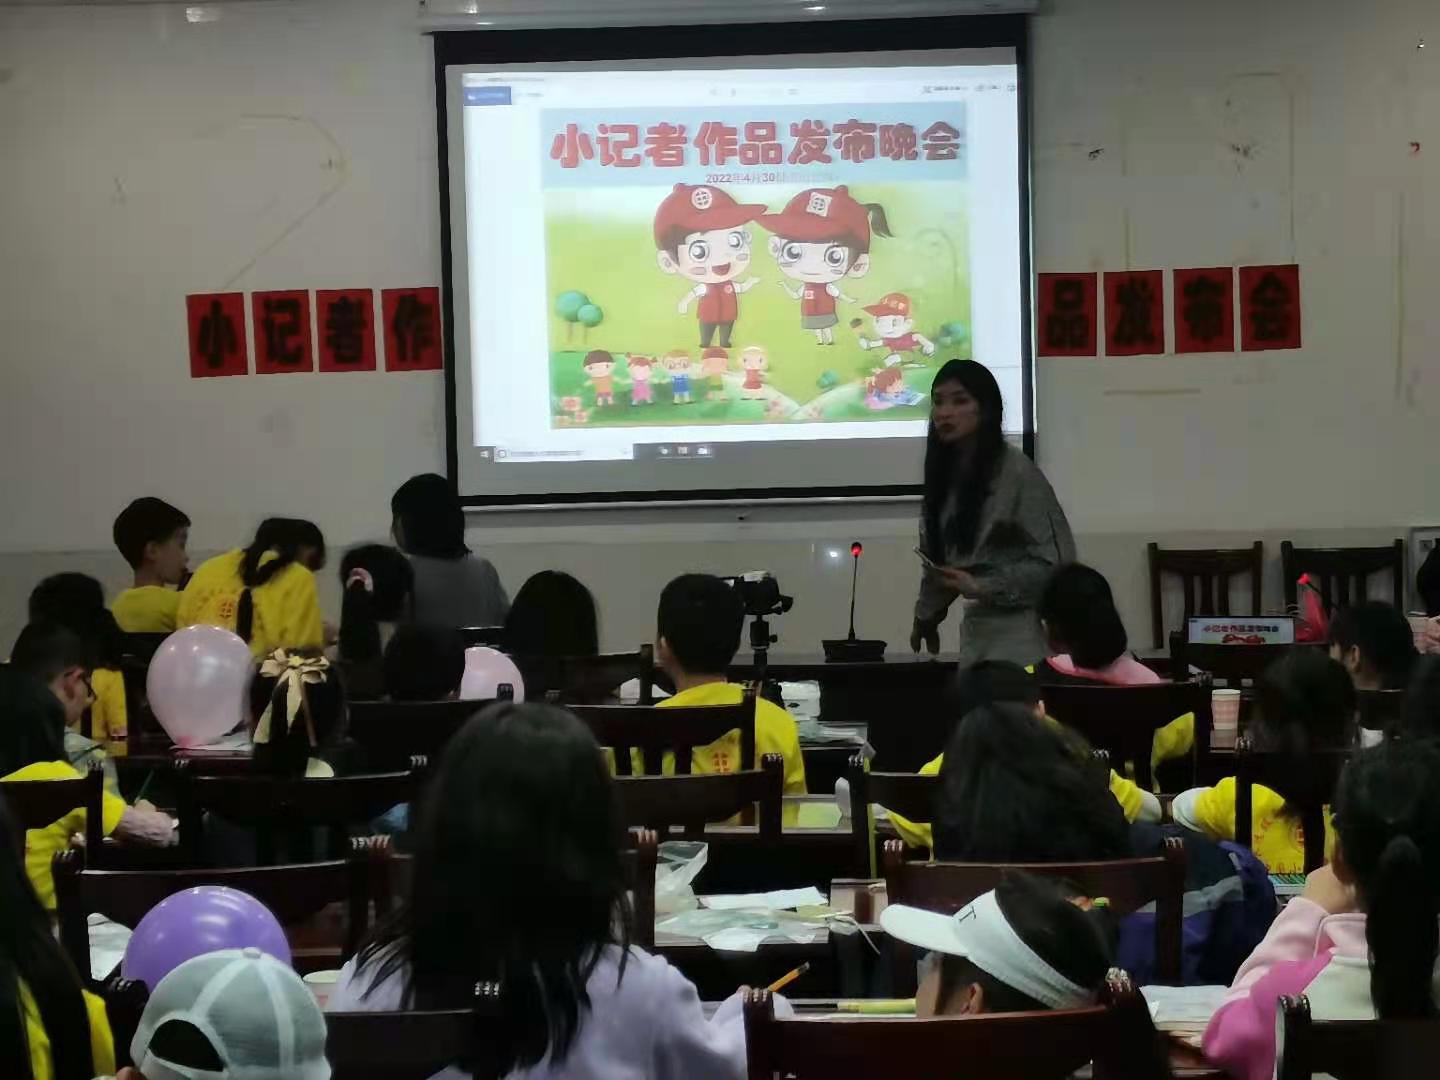 中国小记者学院举办“优秀全能小记者体验营”活动